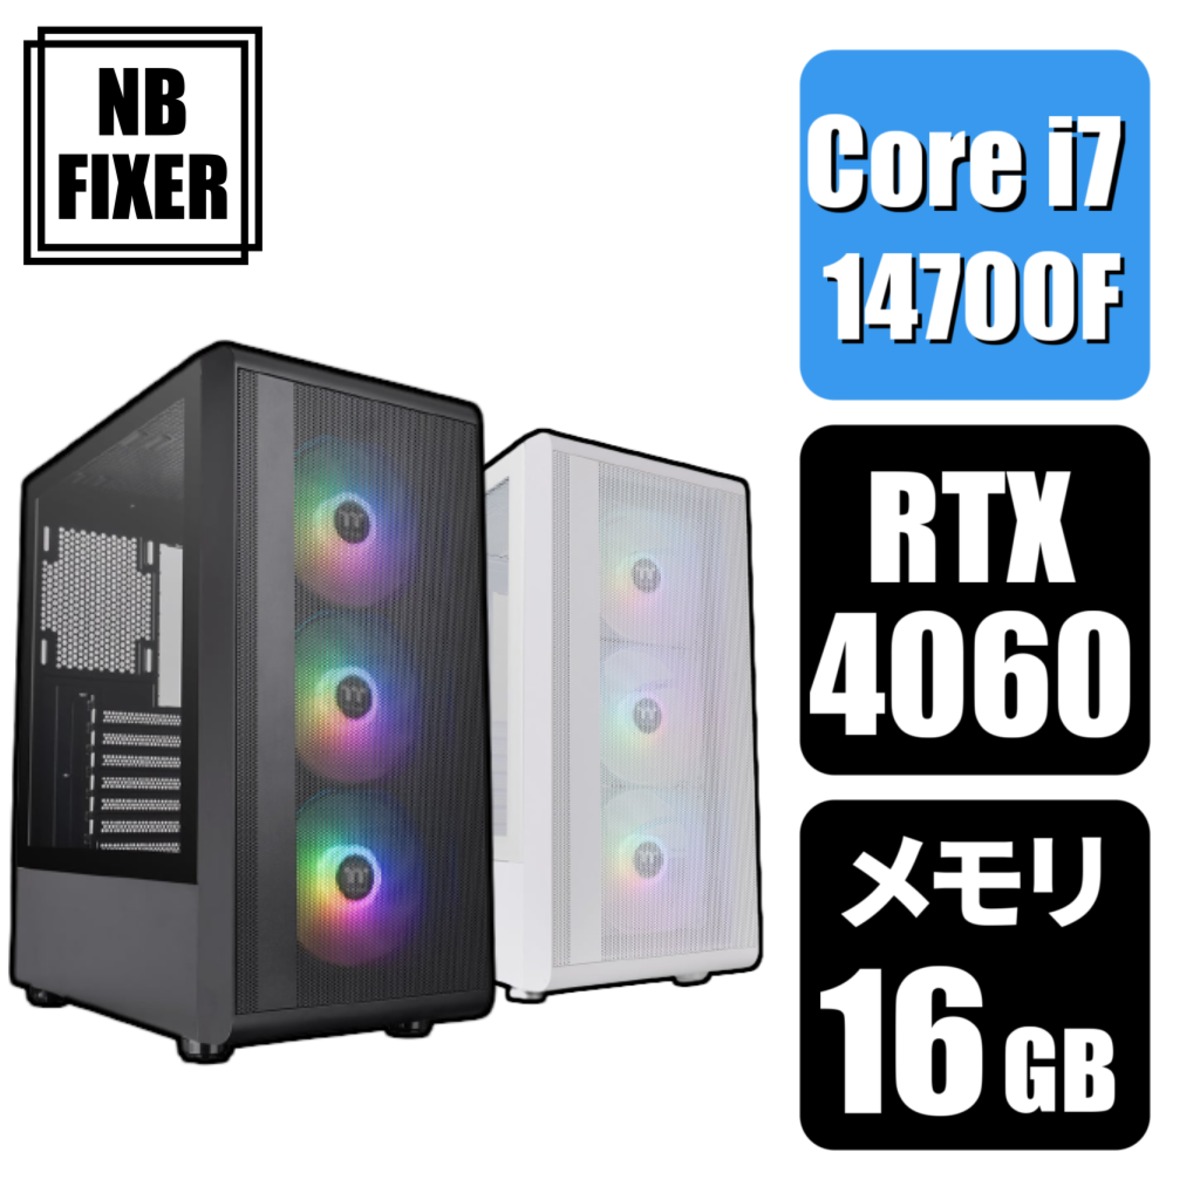 【ゲーミングPC】 Core i7 14700F / RTX4060 / メモリ16GB / SSD 